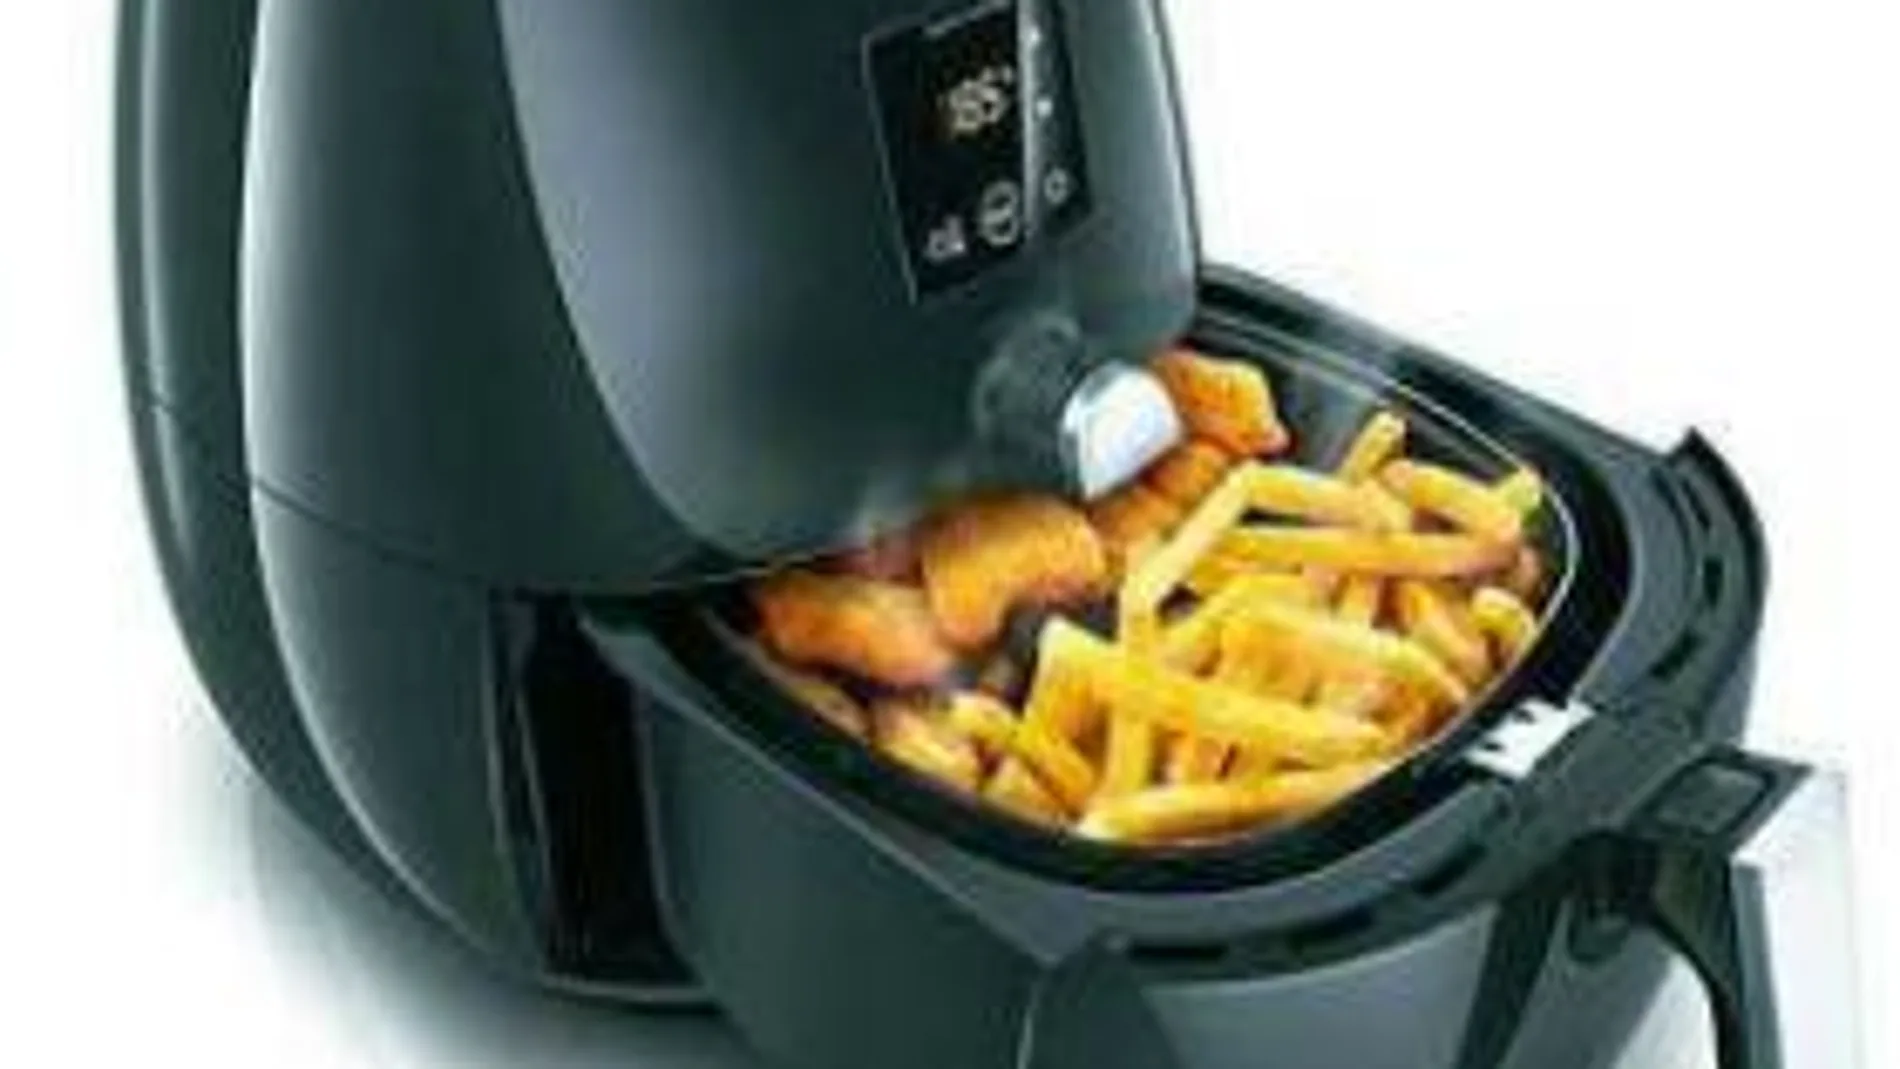 Las nuevas Airfryer TurboStar de Philips consiguen reducir la grasa hasta en un 80 por ciento sin perder el sabor a frito en los alimentos